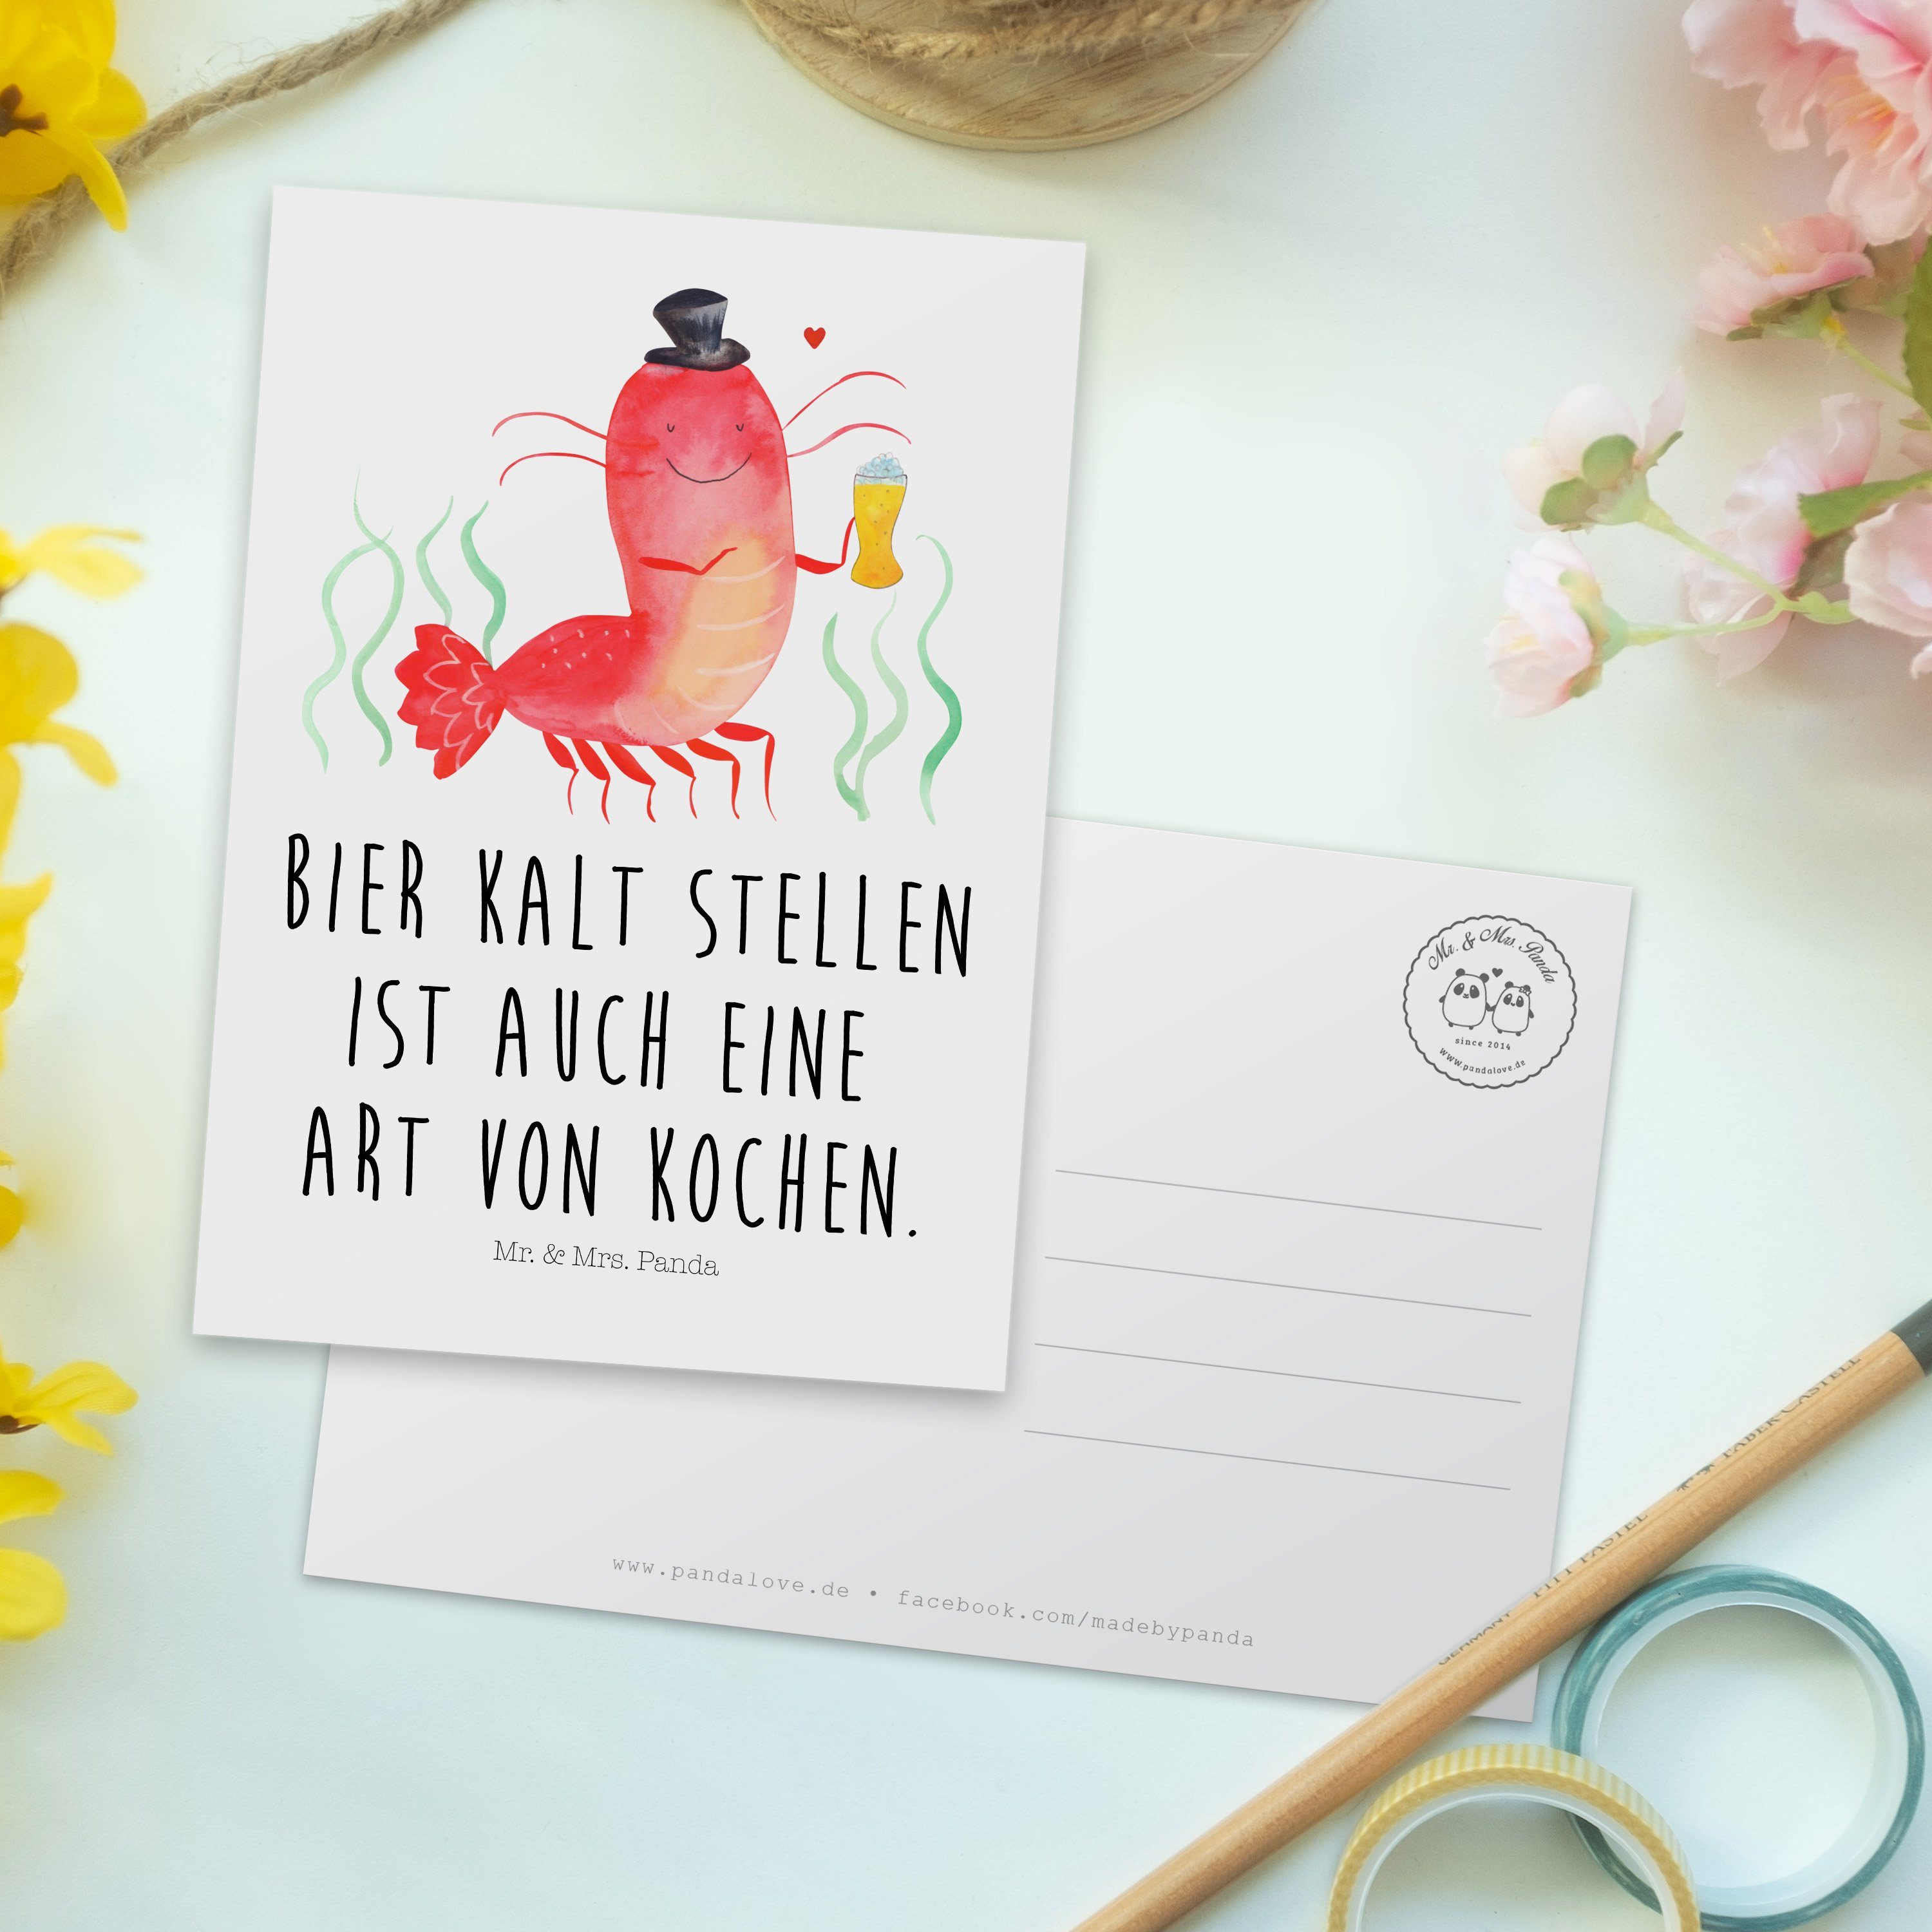 Mr. Panda mit Meer, Mrs. Bierliebhaber, Hummer - Geschenk, Postkarte Weiß & Garnele, - Weizen Ur